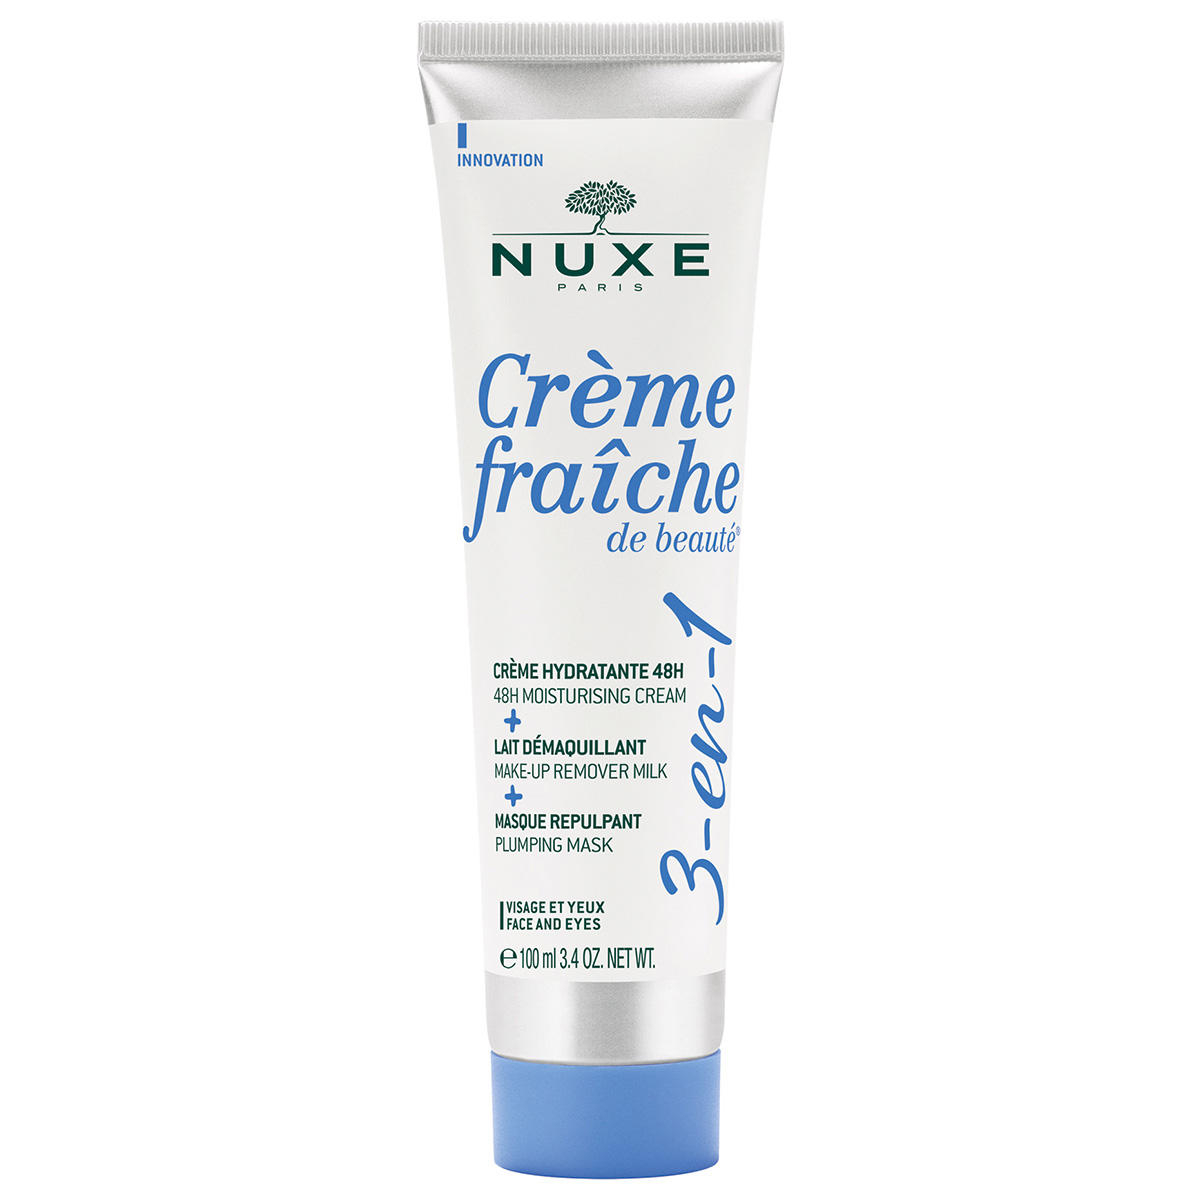 NUXE Crème Fraîche de Beauté 3-in-1 Multifunktionspflege 100 ml - 1